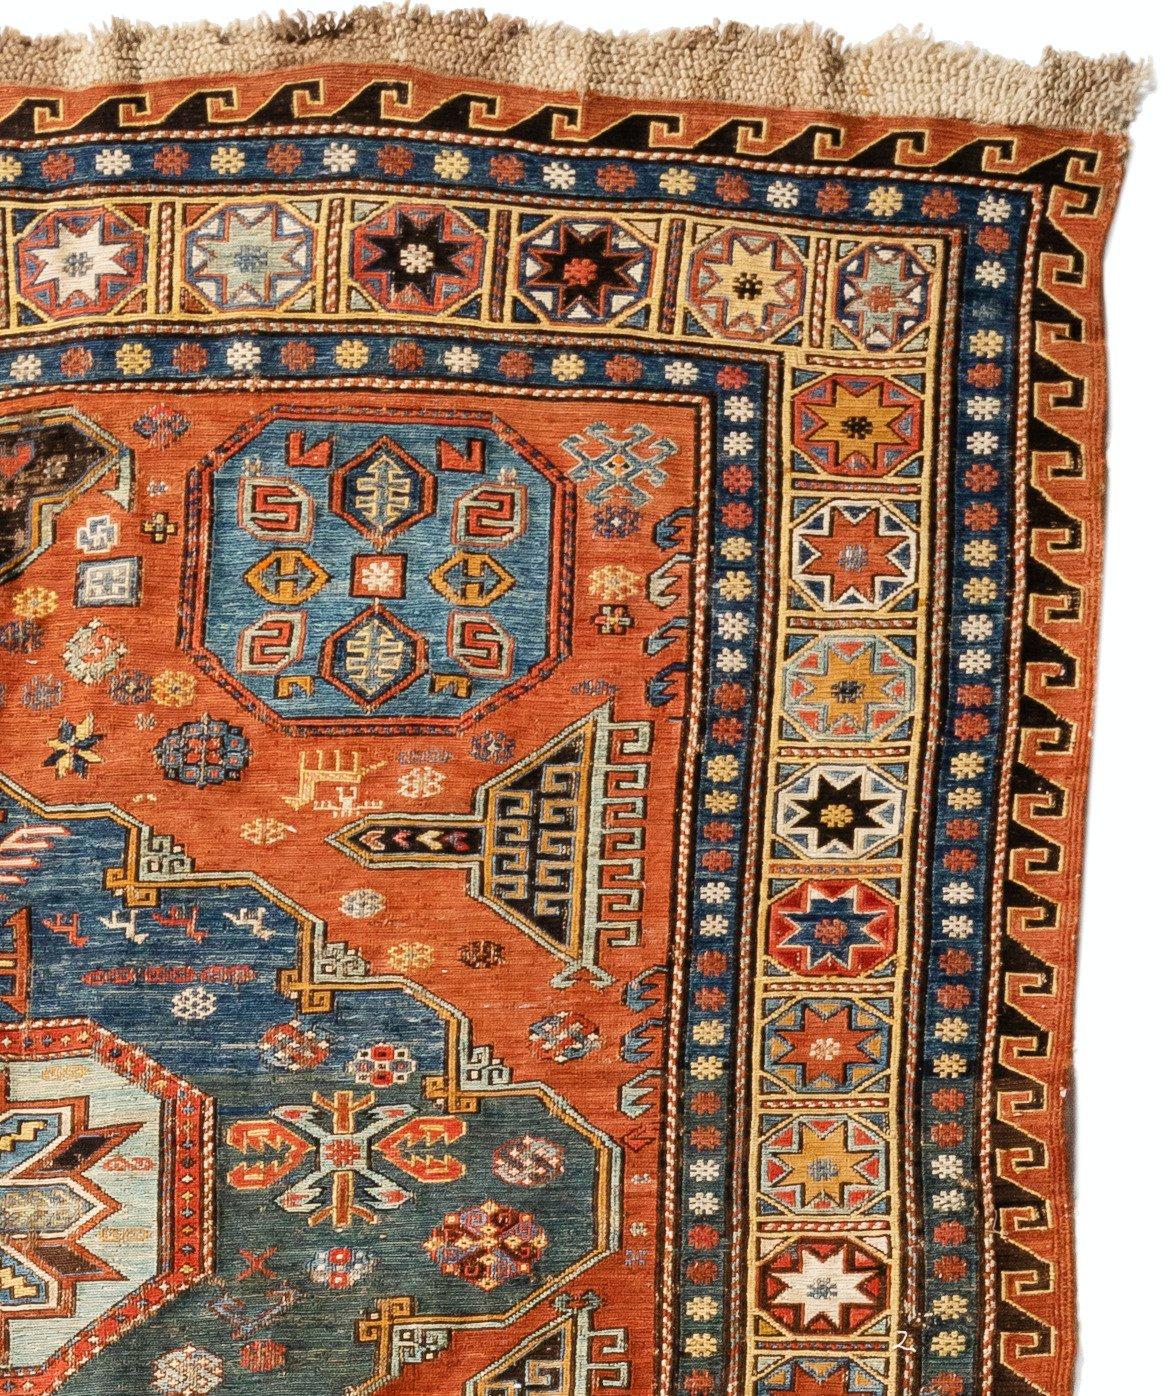 Le soumak est une technique de tapisserie consistant à tisser des textiles solides et décoratifs utilisés comme tapis et sacs domestiques. Il s'agit d'un type de tissage plat, ressemblant quelque peu au Kilim mais plus fort et plus épais, avec une